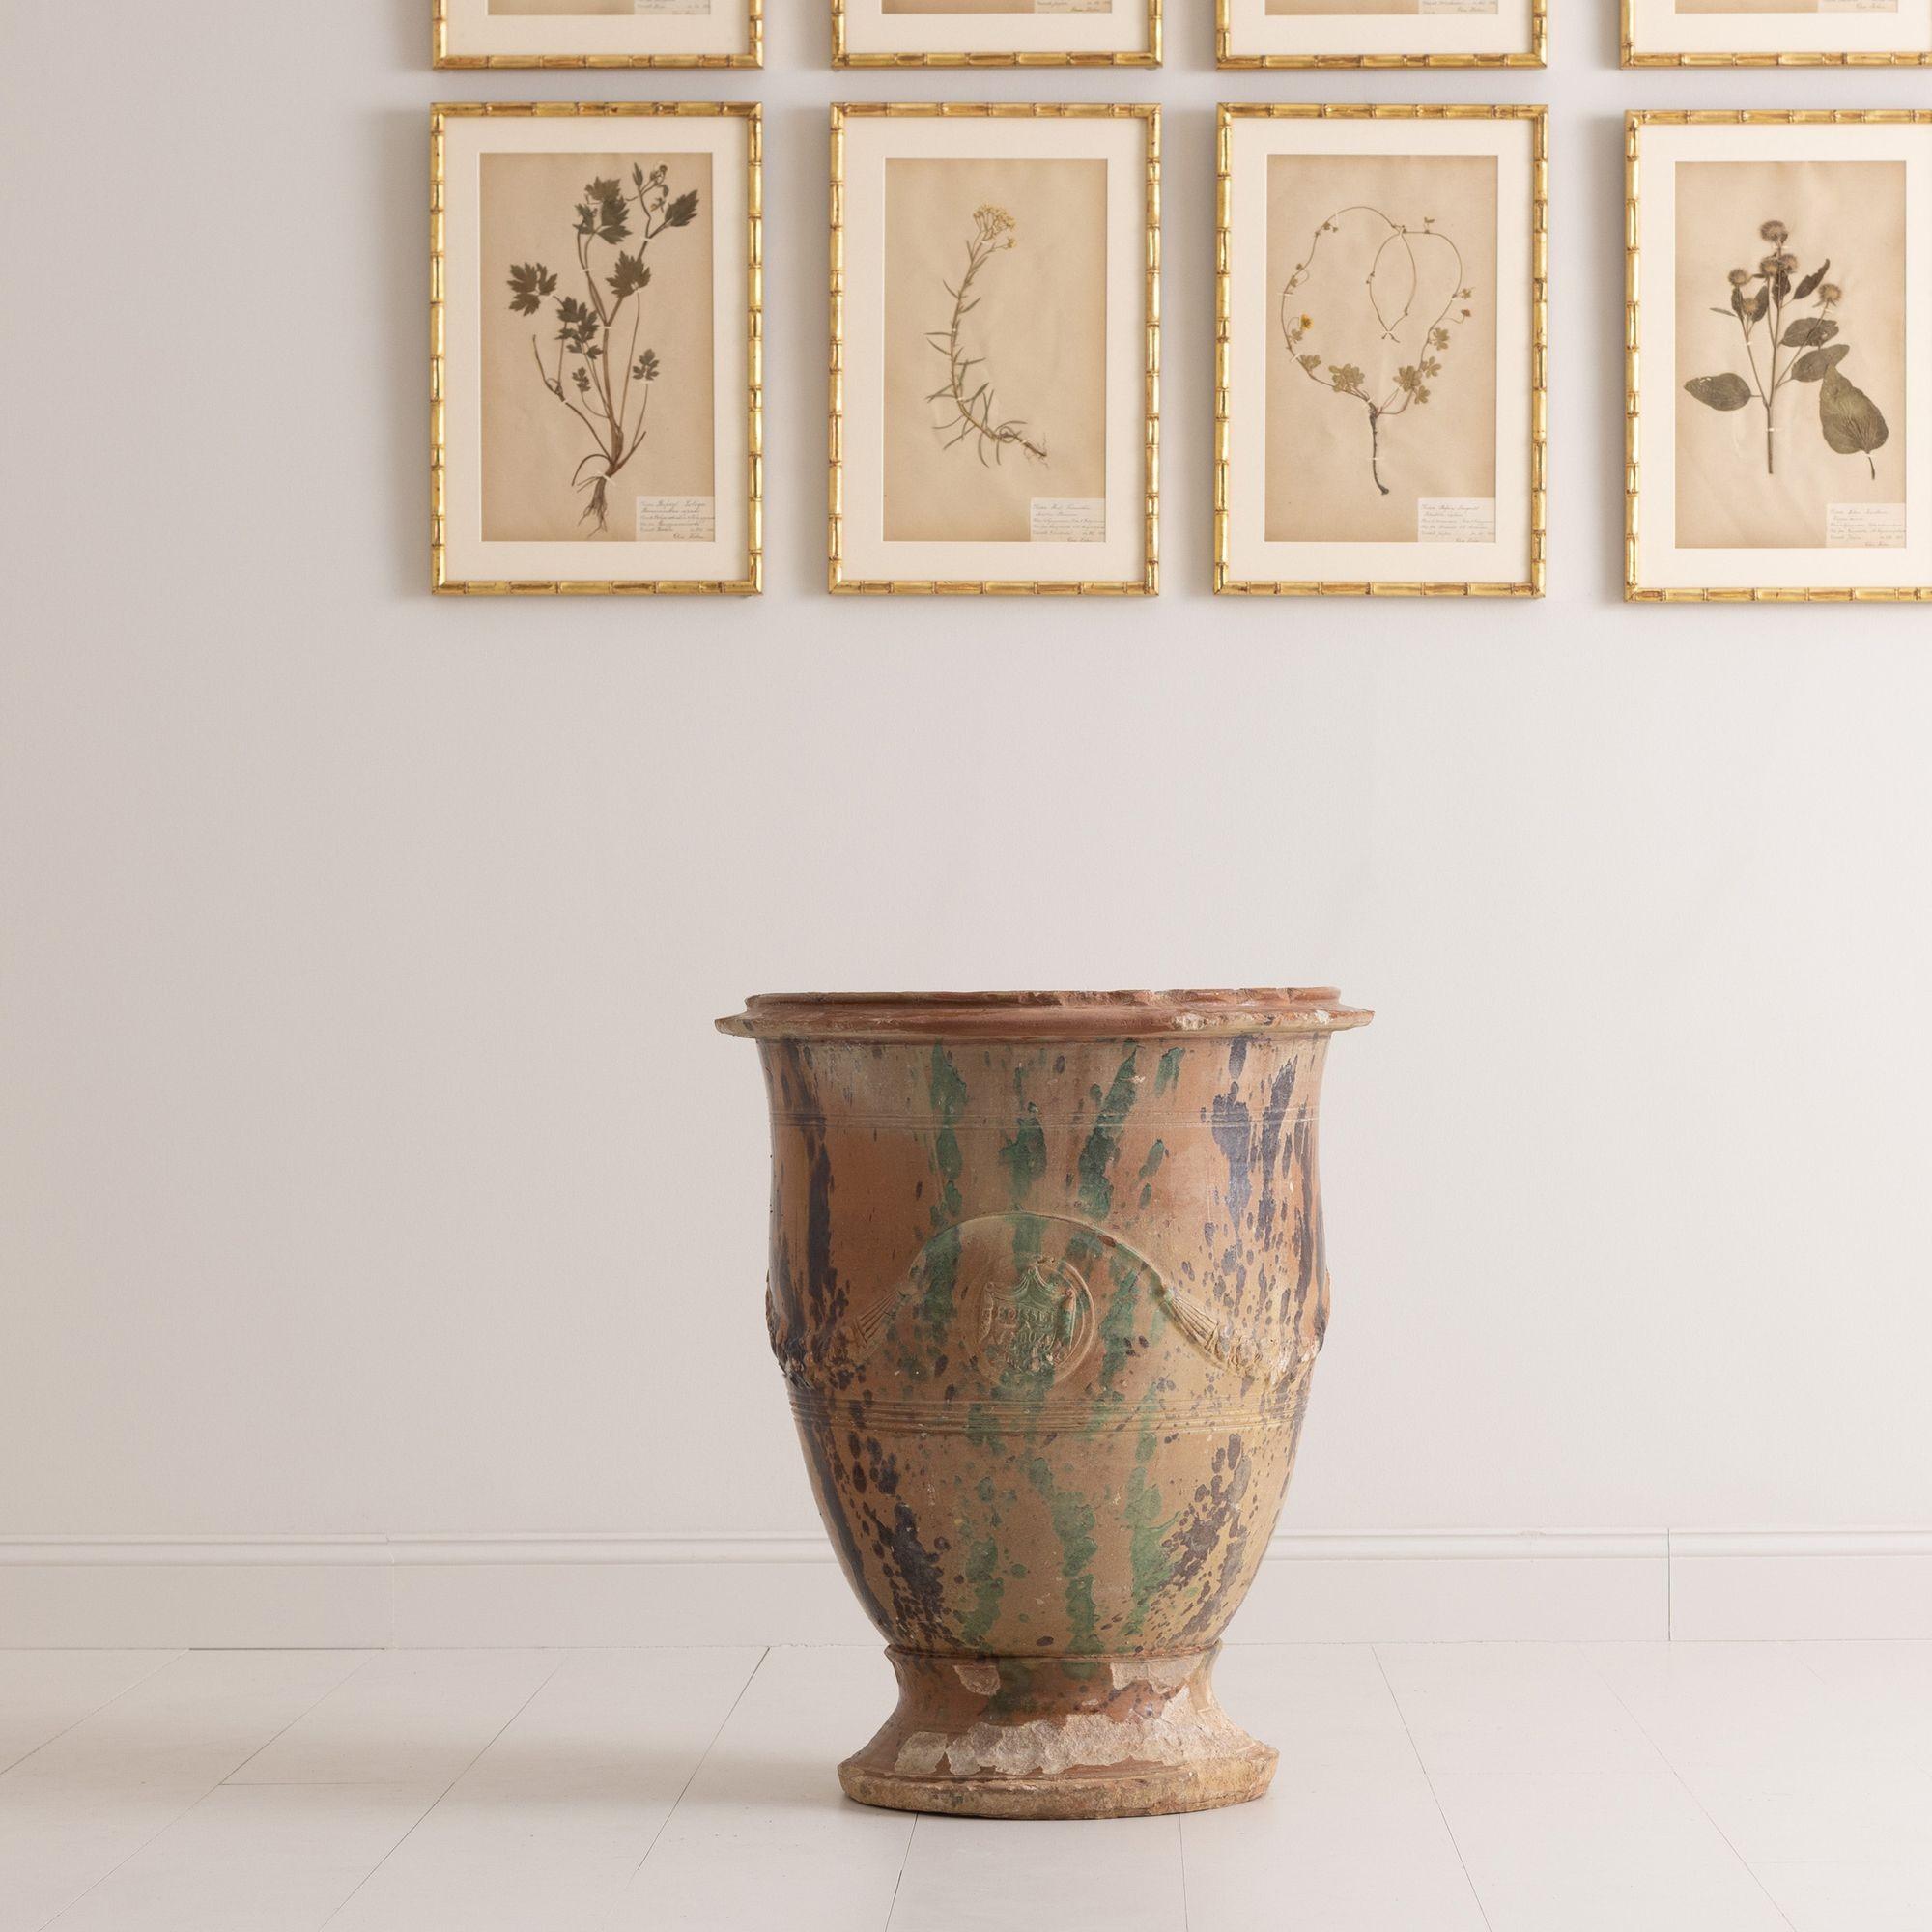 Un grand pot d'Anduze français signé par le fabricant original des vases d'Anduze, Boisset. Marqué de l'écusson Boisset dans le cartouche. Cette pièce présente une belle glaçure usée de brun, de vert et d'ocre avec des guirlandes traditionnelles en